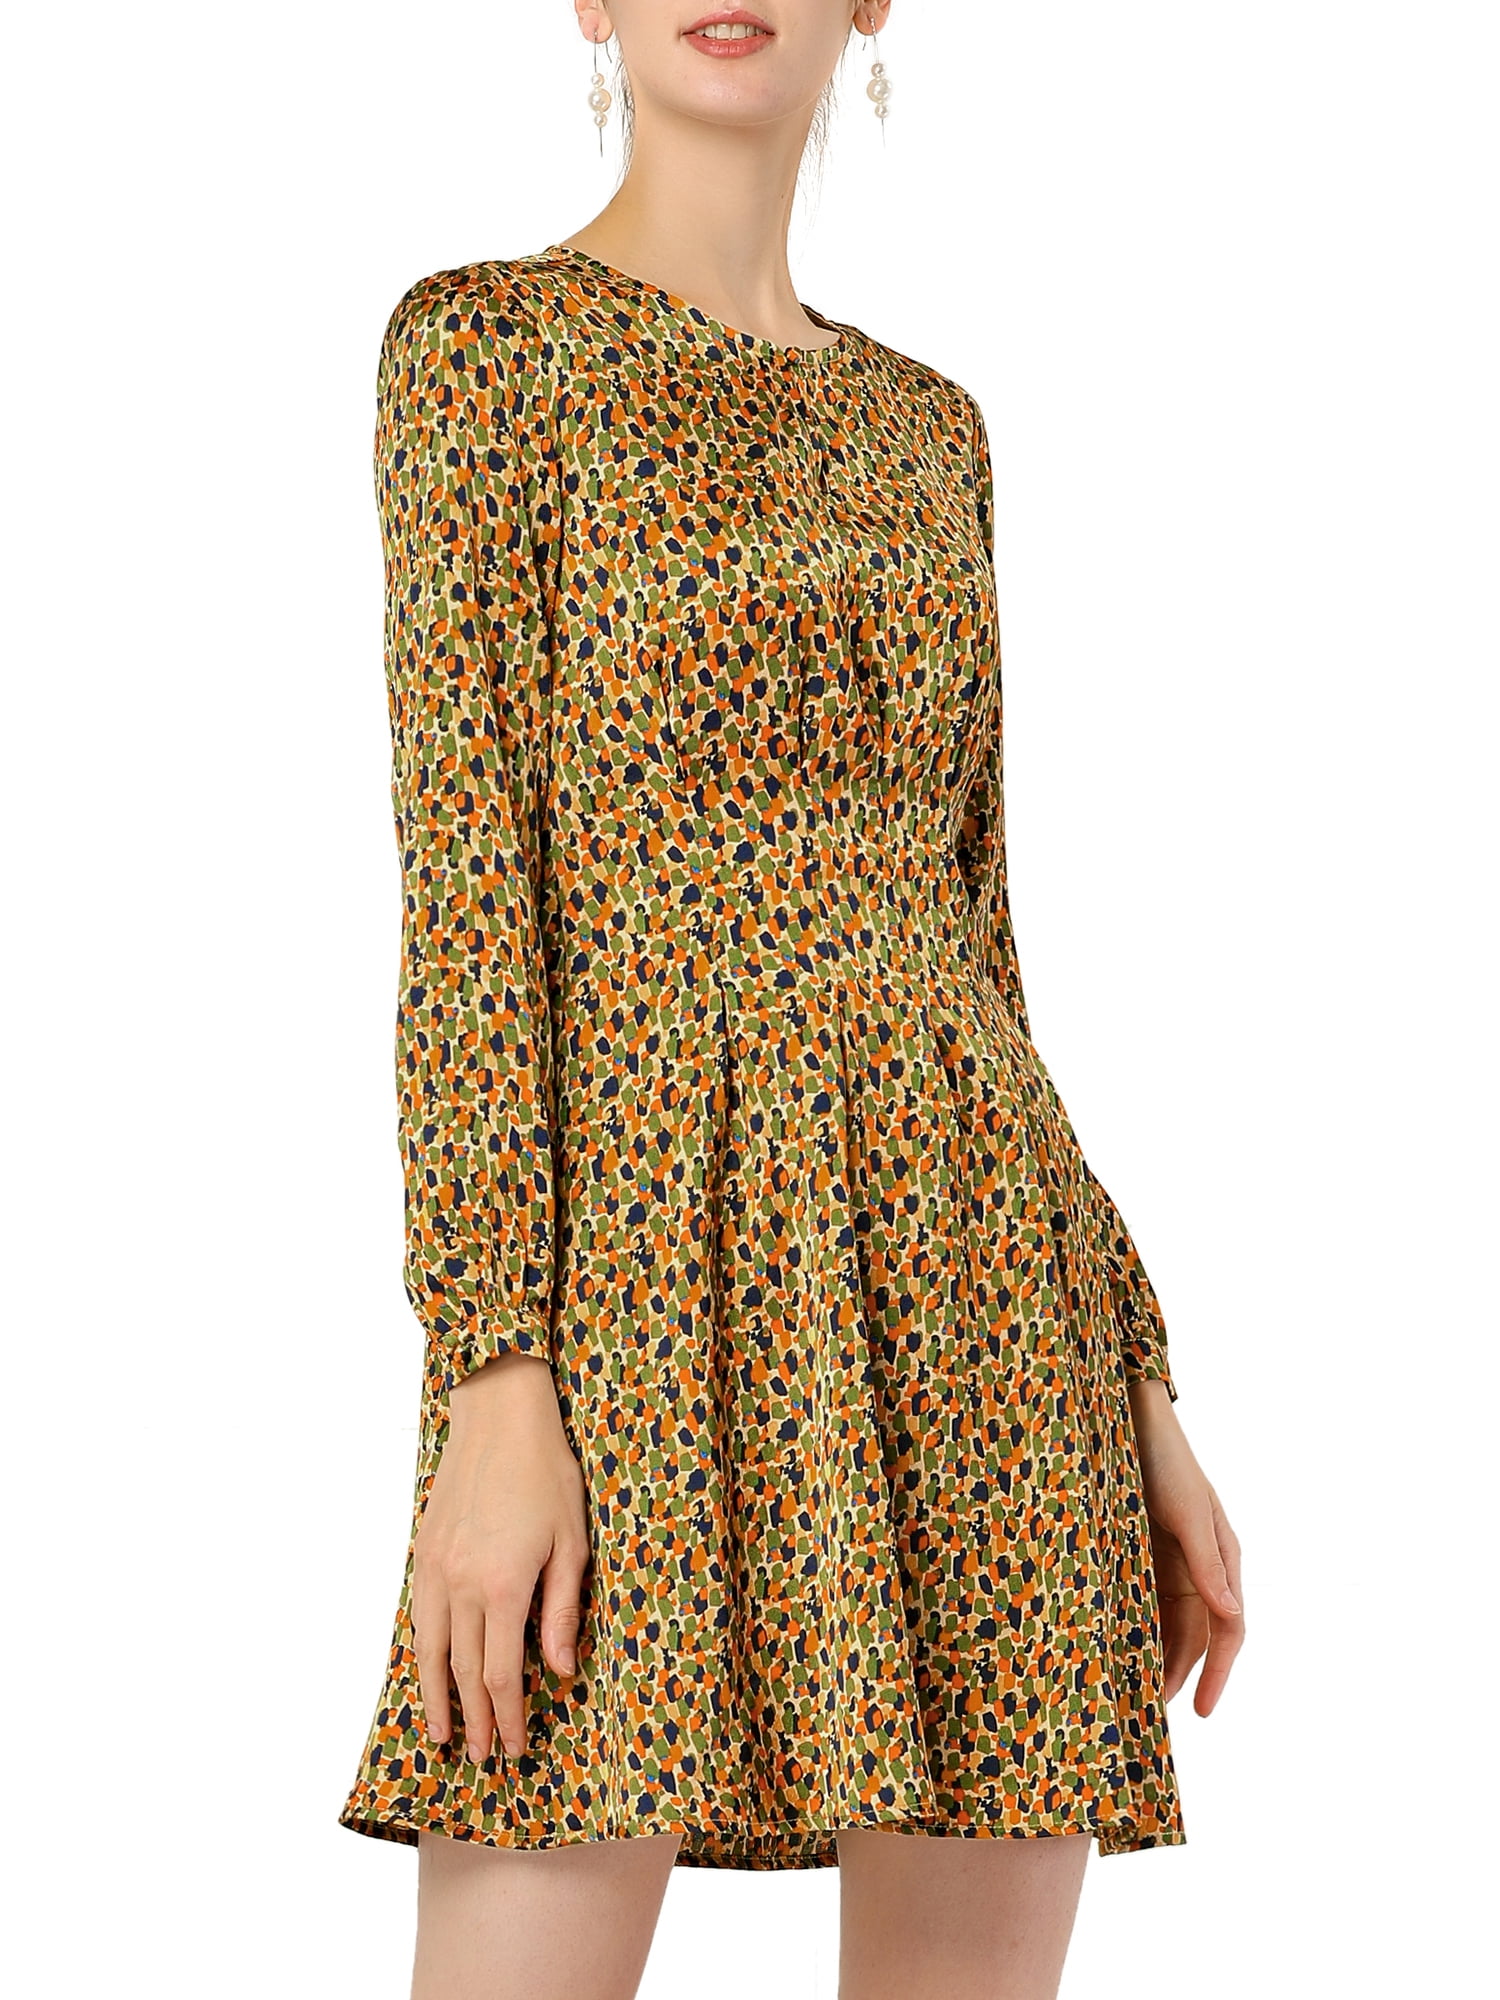 Lovely Elegant Women's Dress Sleeveless Tunic Scoop Neck Size 8-16 8905 